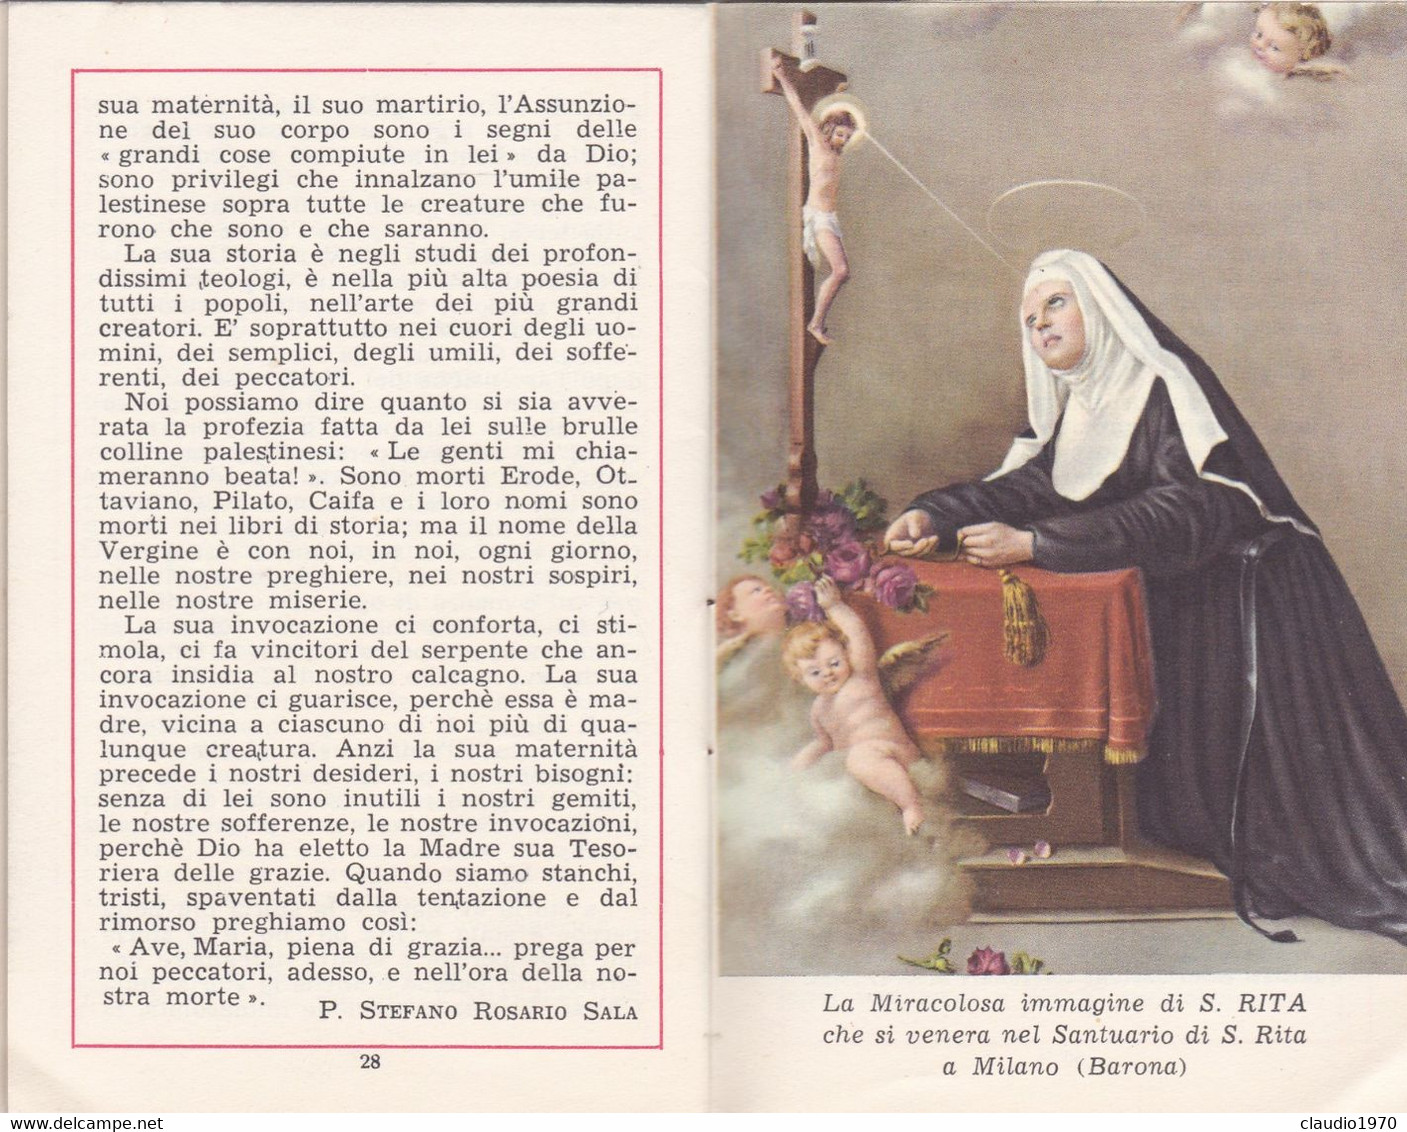 LIBRETTO - LA MADONNA  - LA VOCE DI S. RITA - N.8 - 20 APERILE 1956 - IL PIU GRANDE SANTUARIO IN ONORE DI S. RITA ALLA B